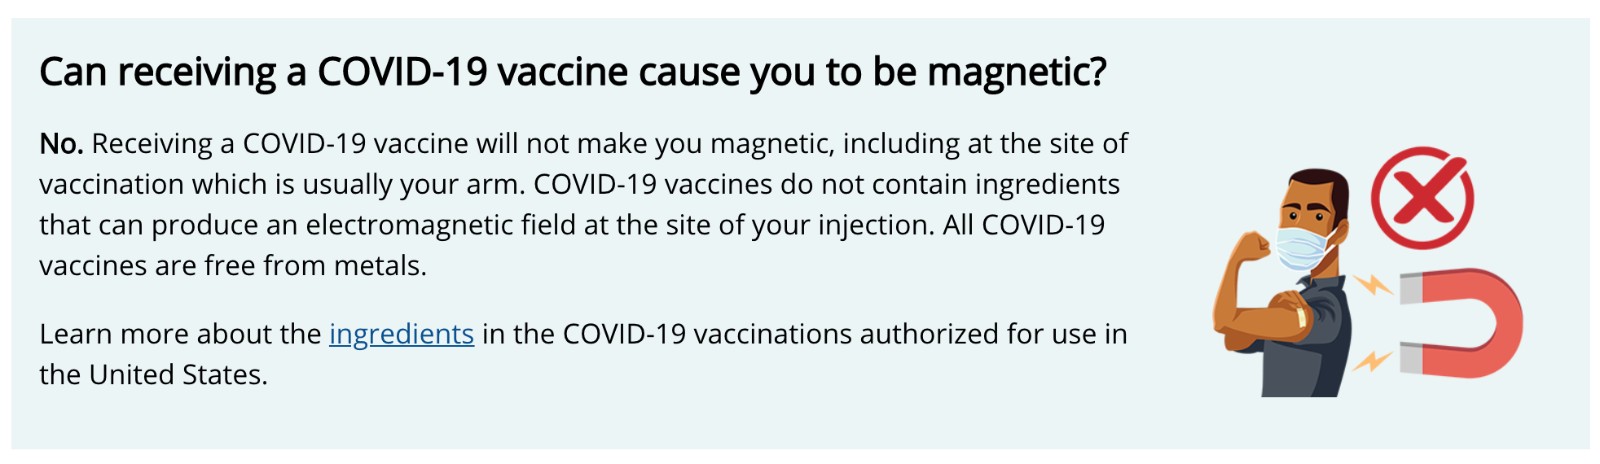 新冠肺炎-新冠疫苗-謠言-美國-CDC-闢謠